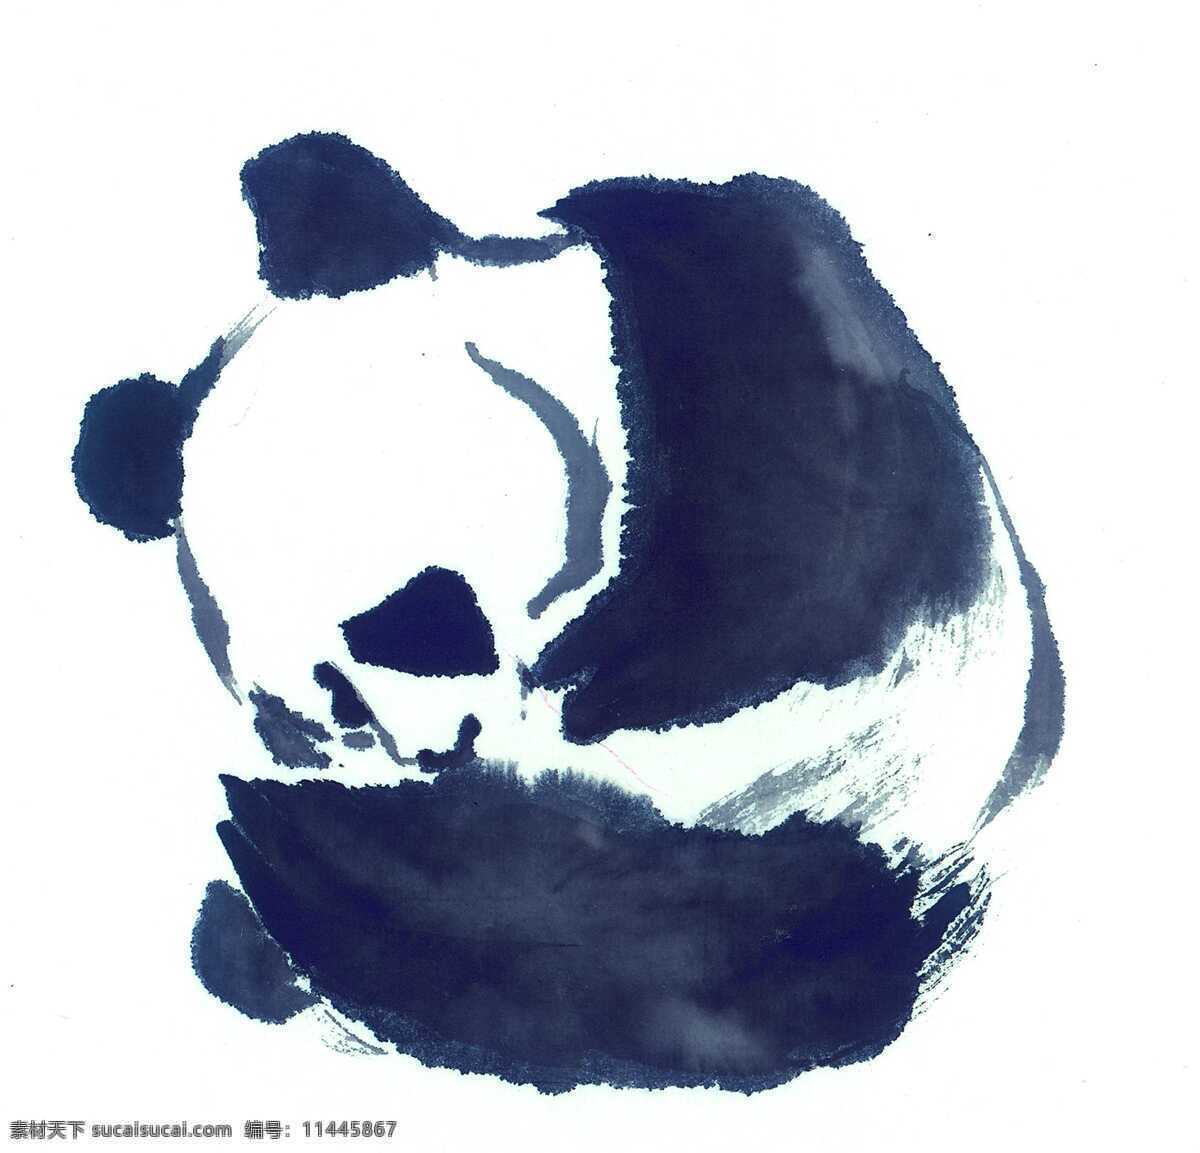 水墨 熊猫 水彩画 水彩 画 水墨画 图案 文化 艺术 古代 传统 水墨动物 书画文字 文化艺术